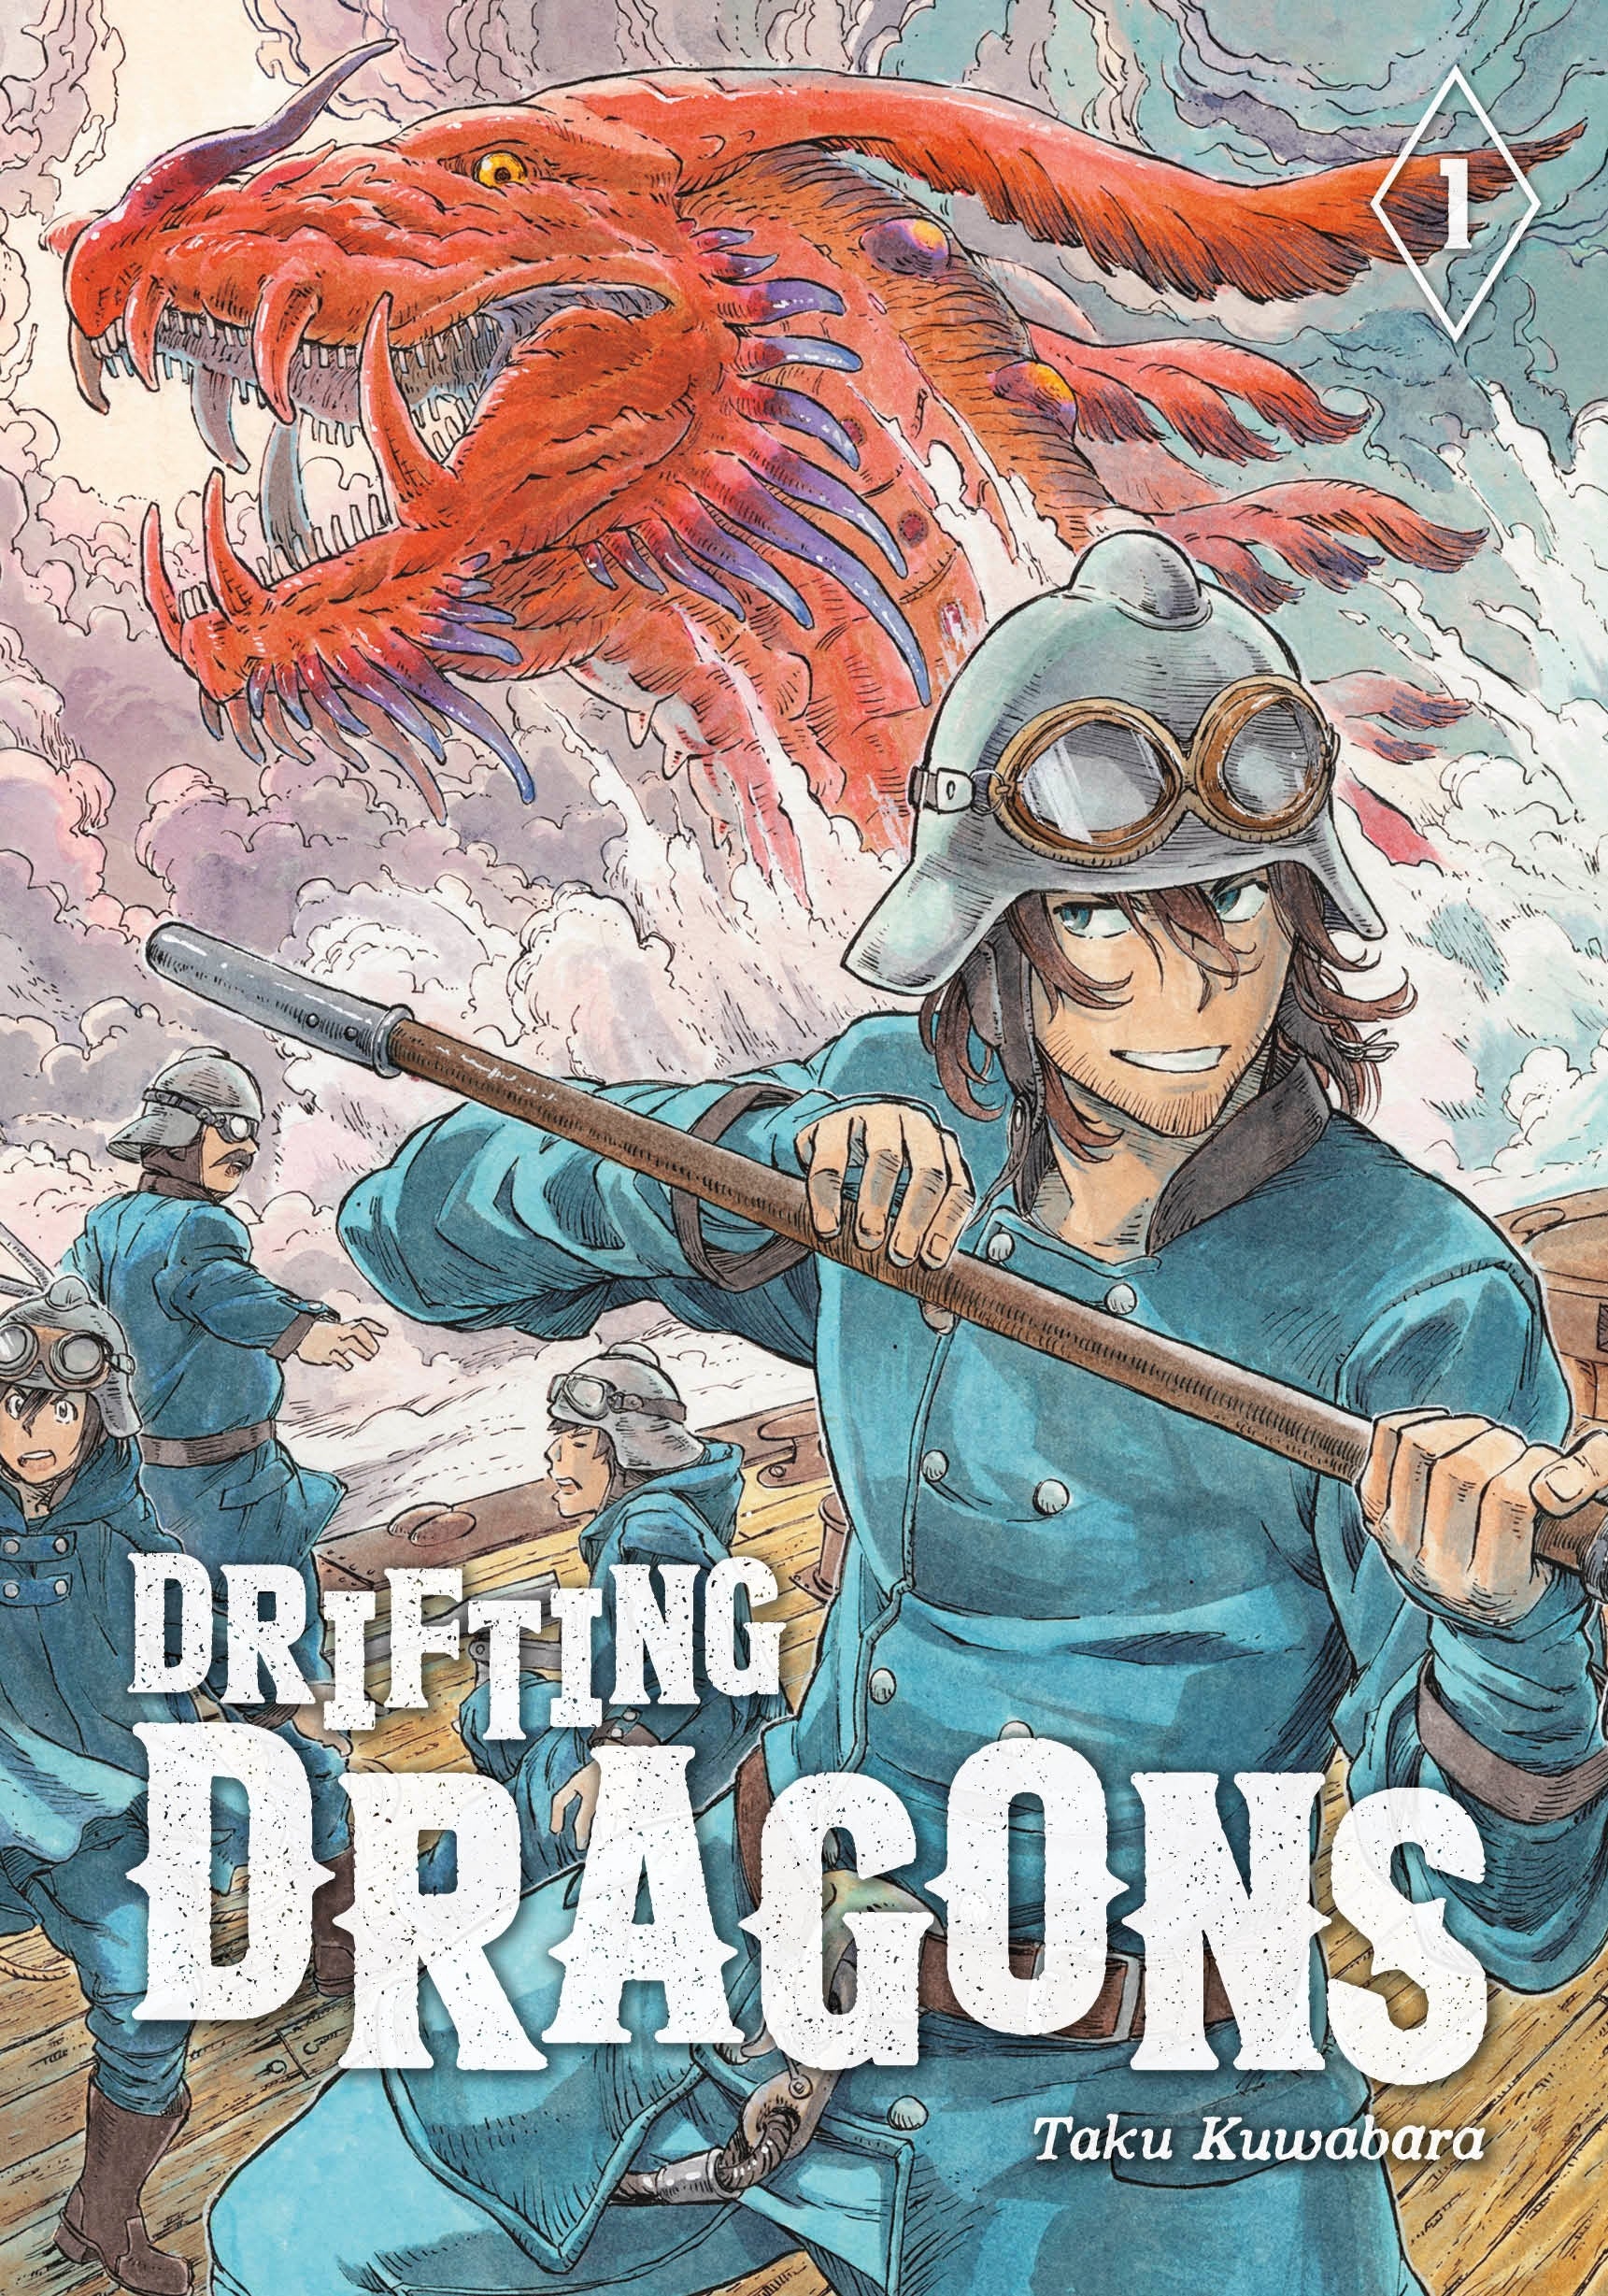 Drifting Dragons, Vol. 1